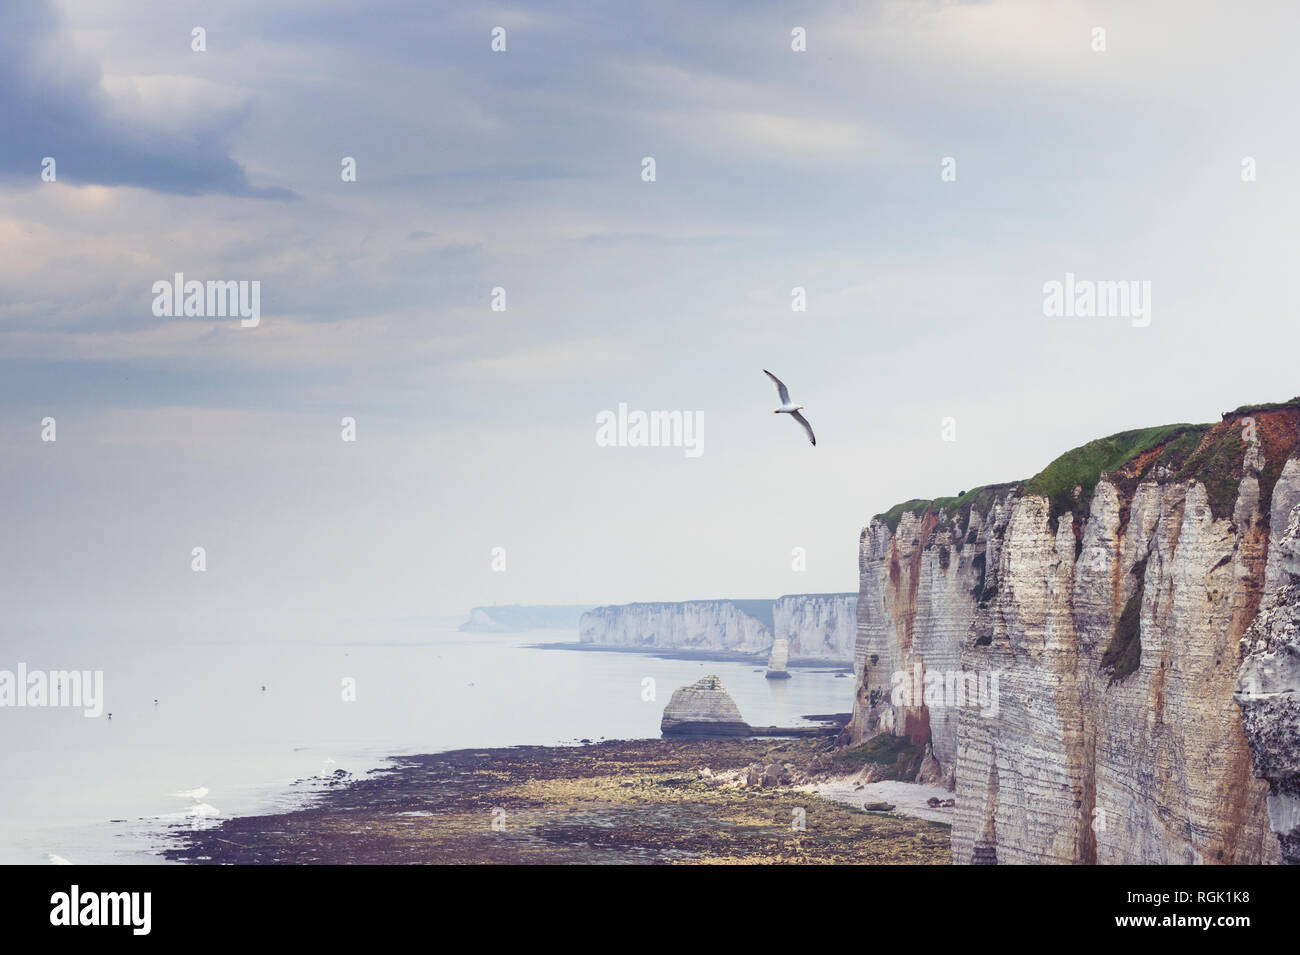 Alabasterküste bei Etretat, Normandie, frankreich Stock Photo